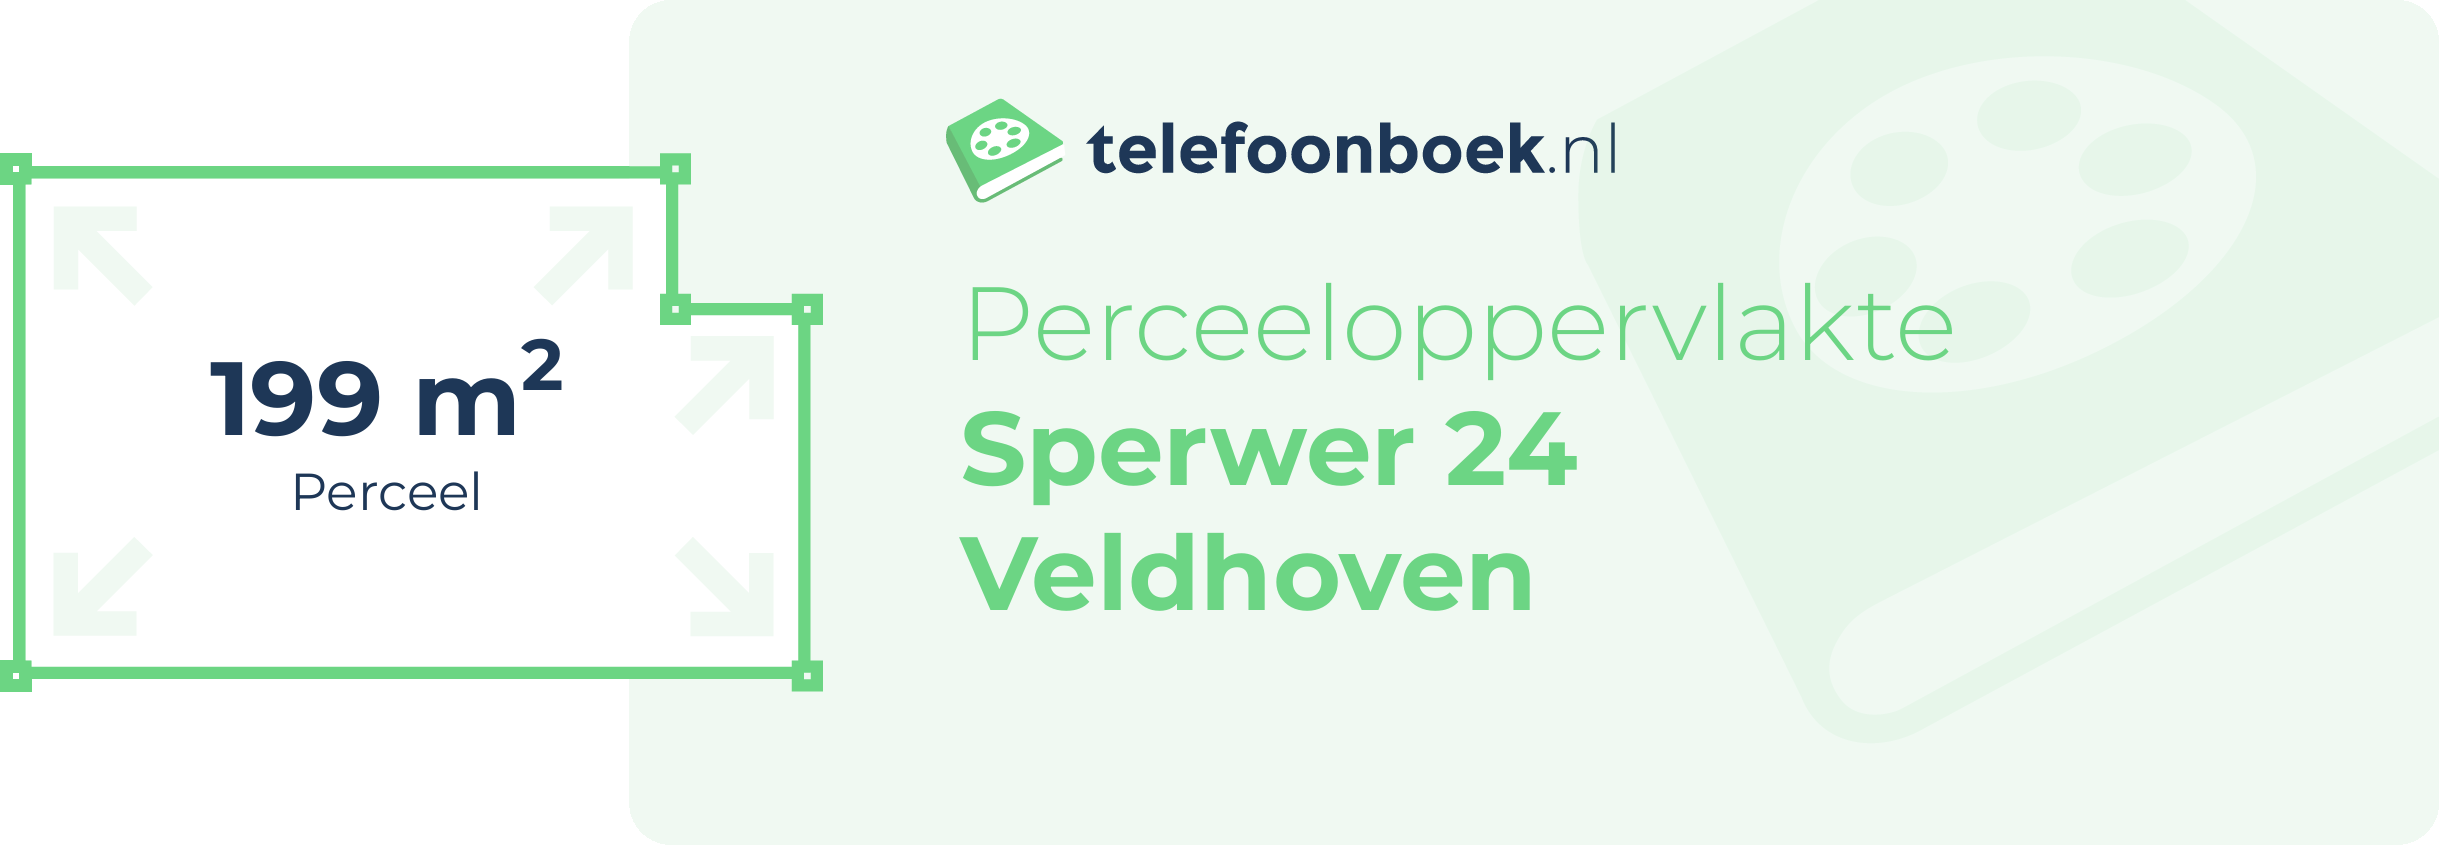 Perceeloppervlakte Sperwer 24 Veldhoven